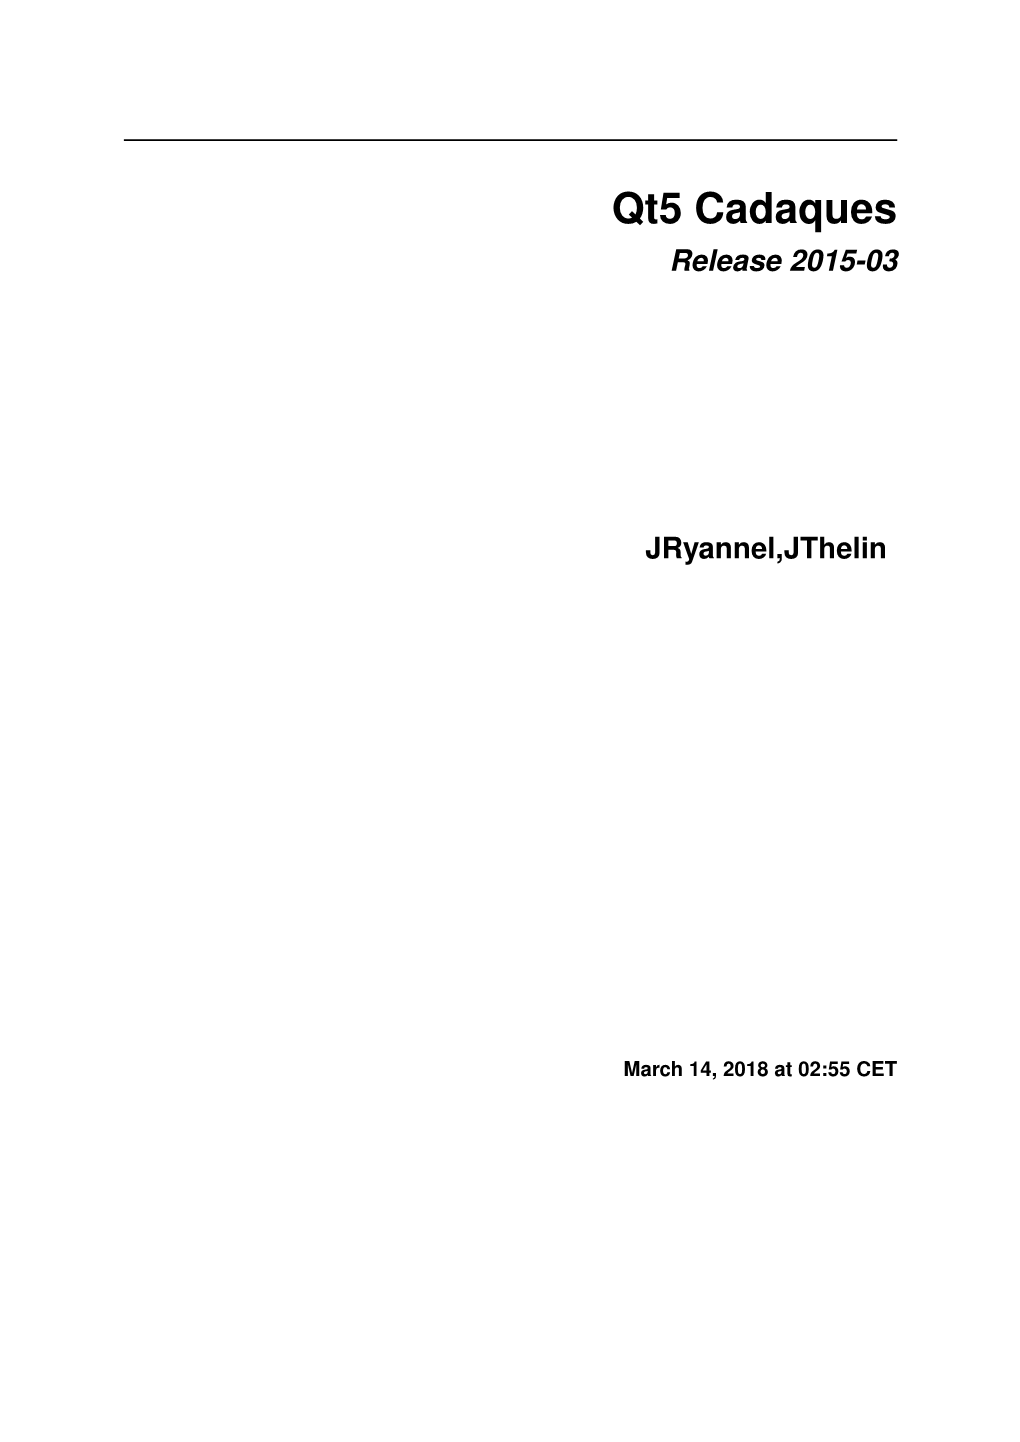 Release 2015-03 Jryannel,Jthelin